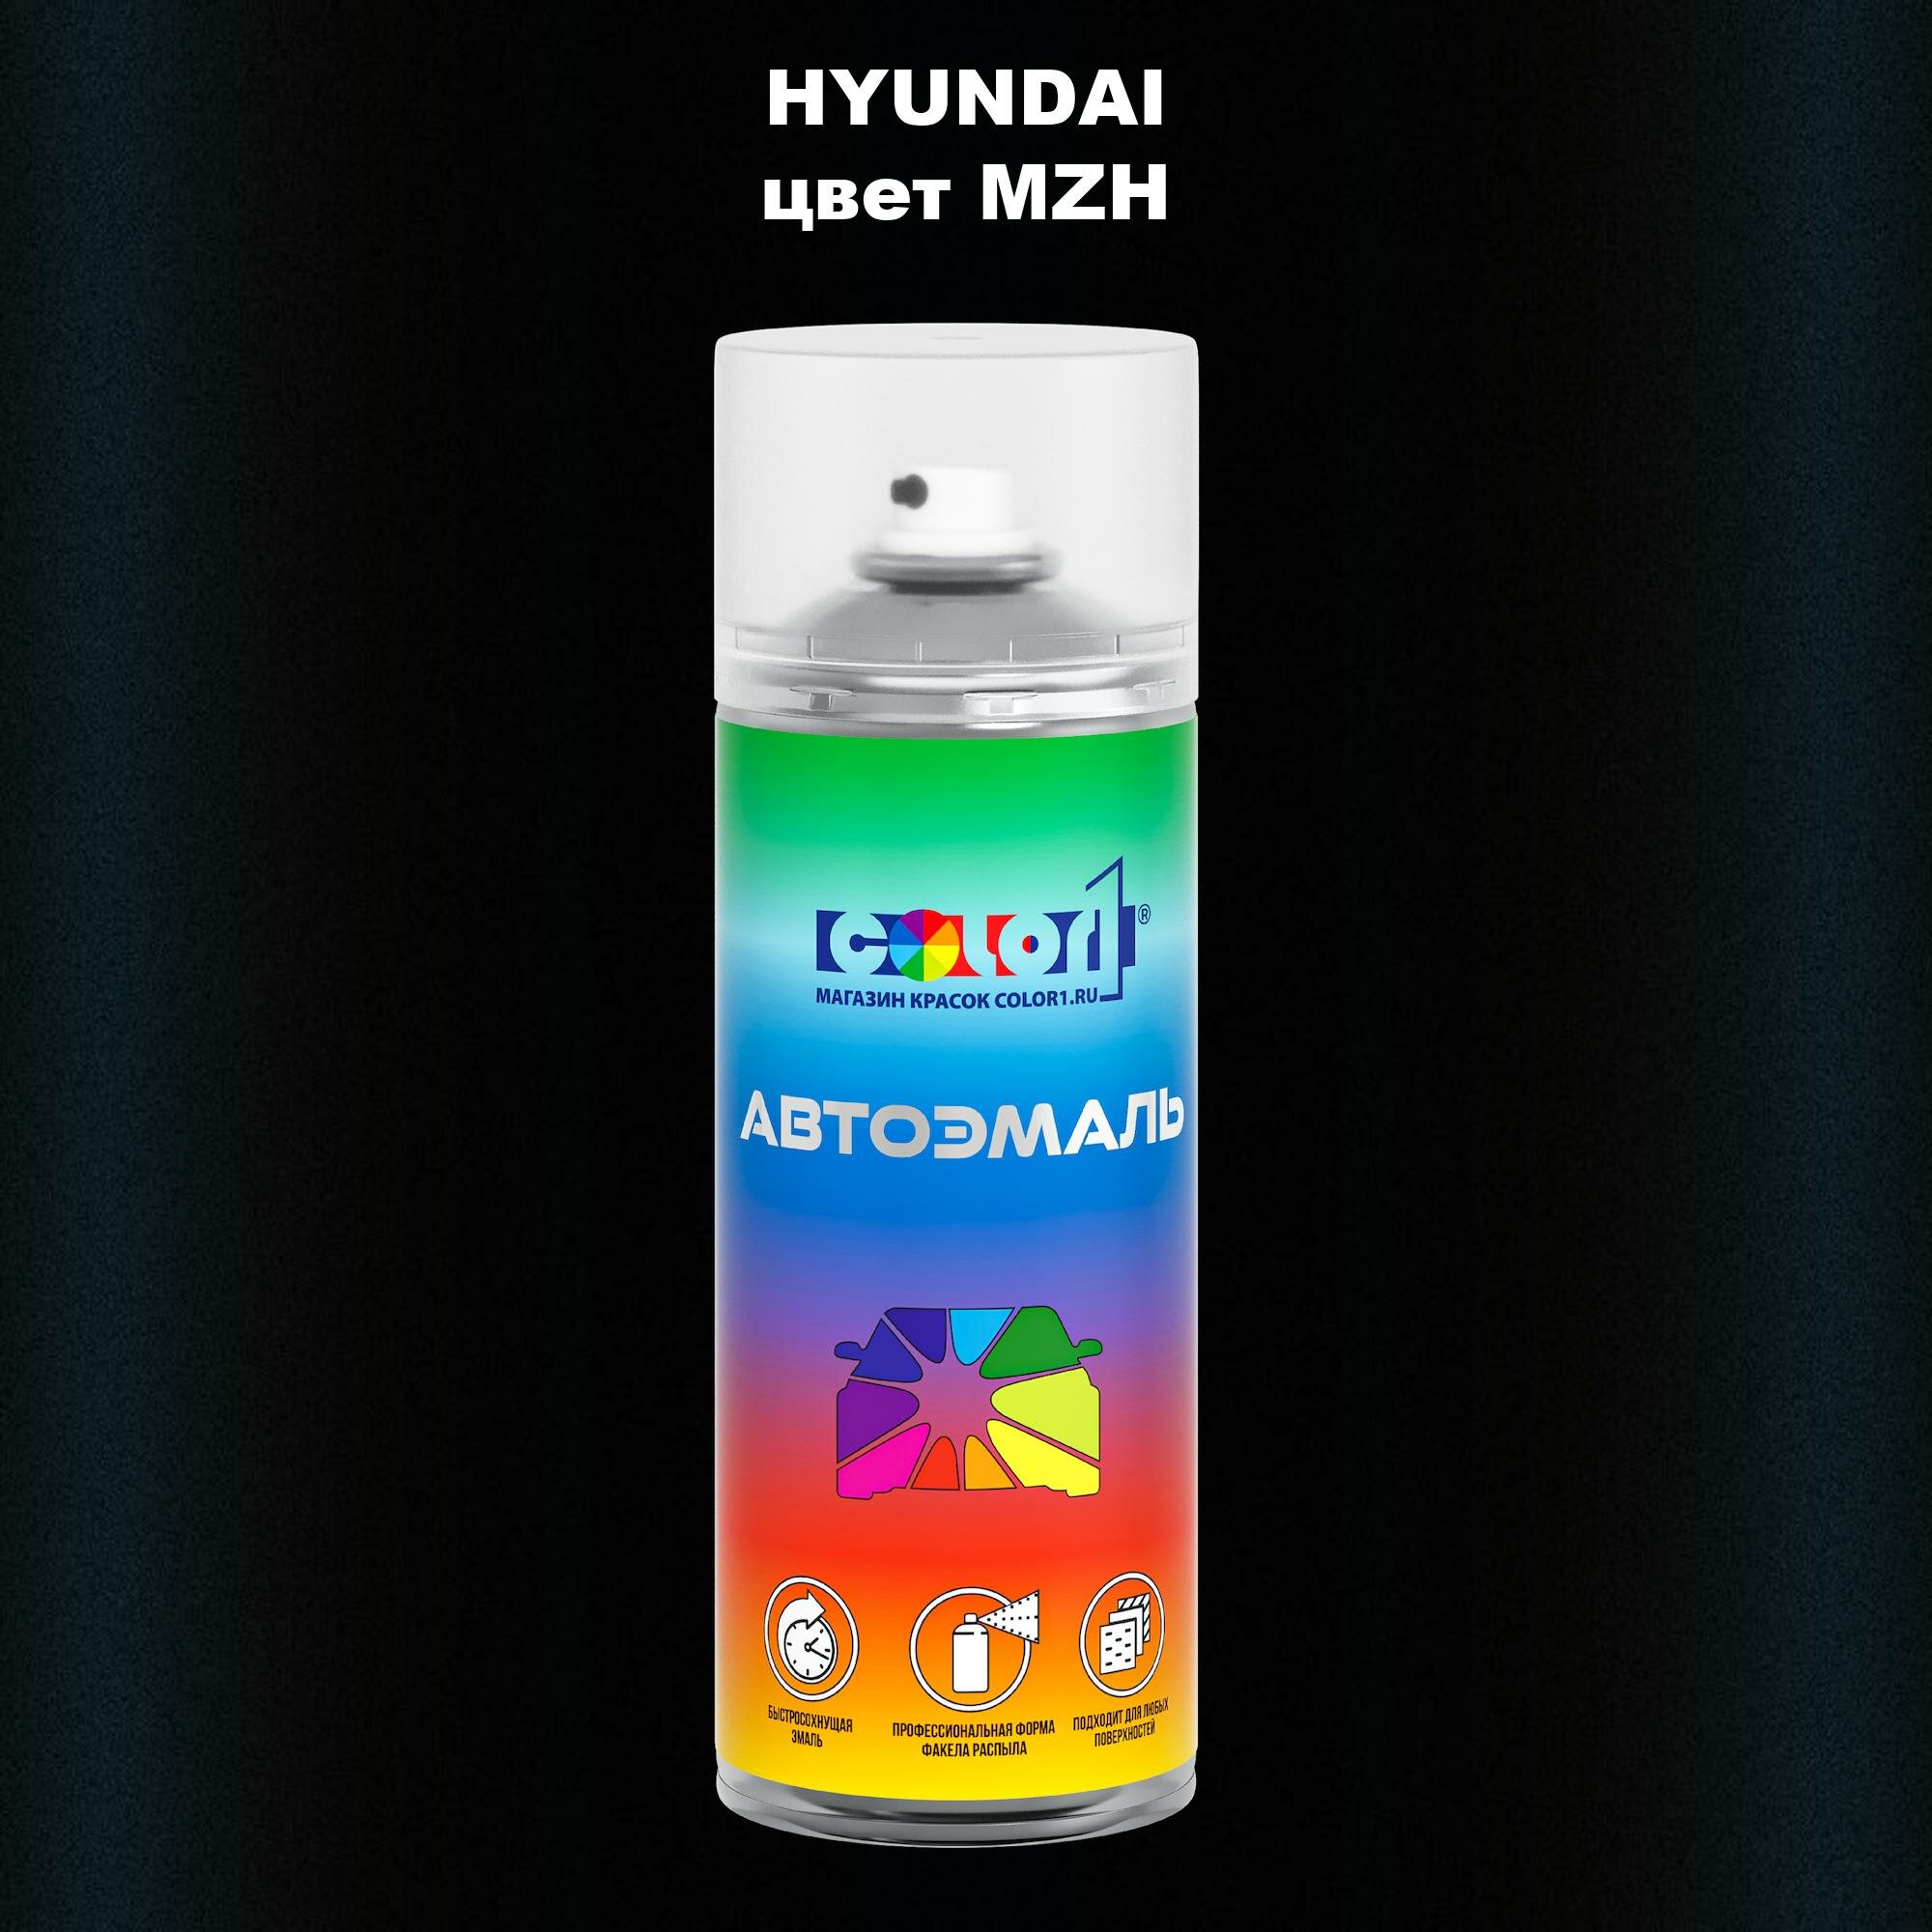 Аэрозольная краска 520мл, для HYUNDAI, цвет MZH - PHANTOM BLACK